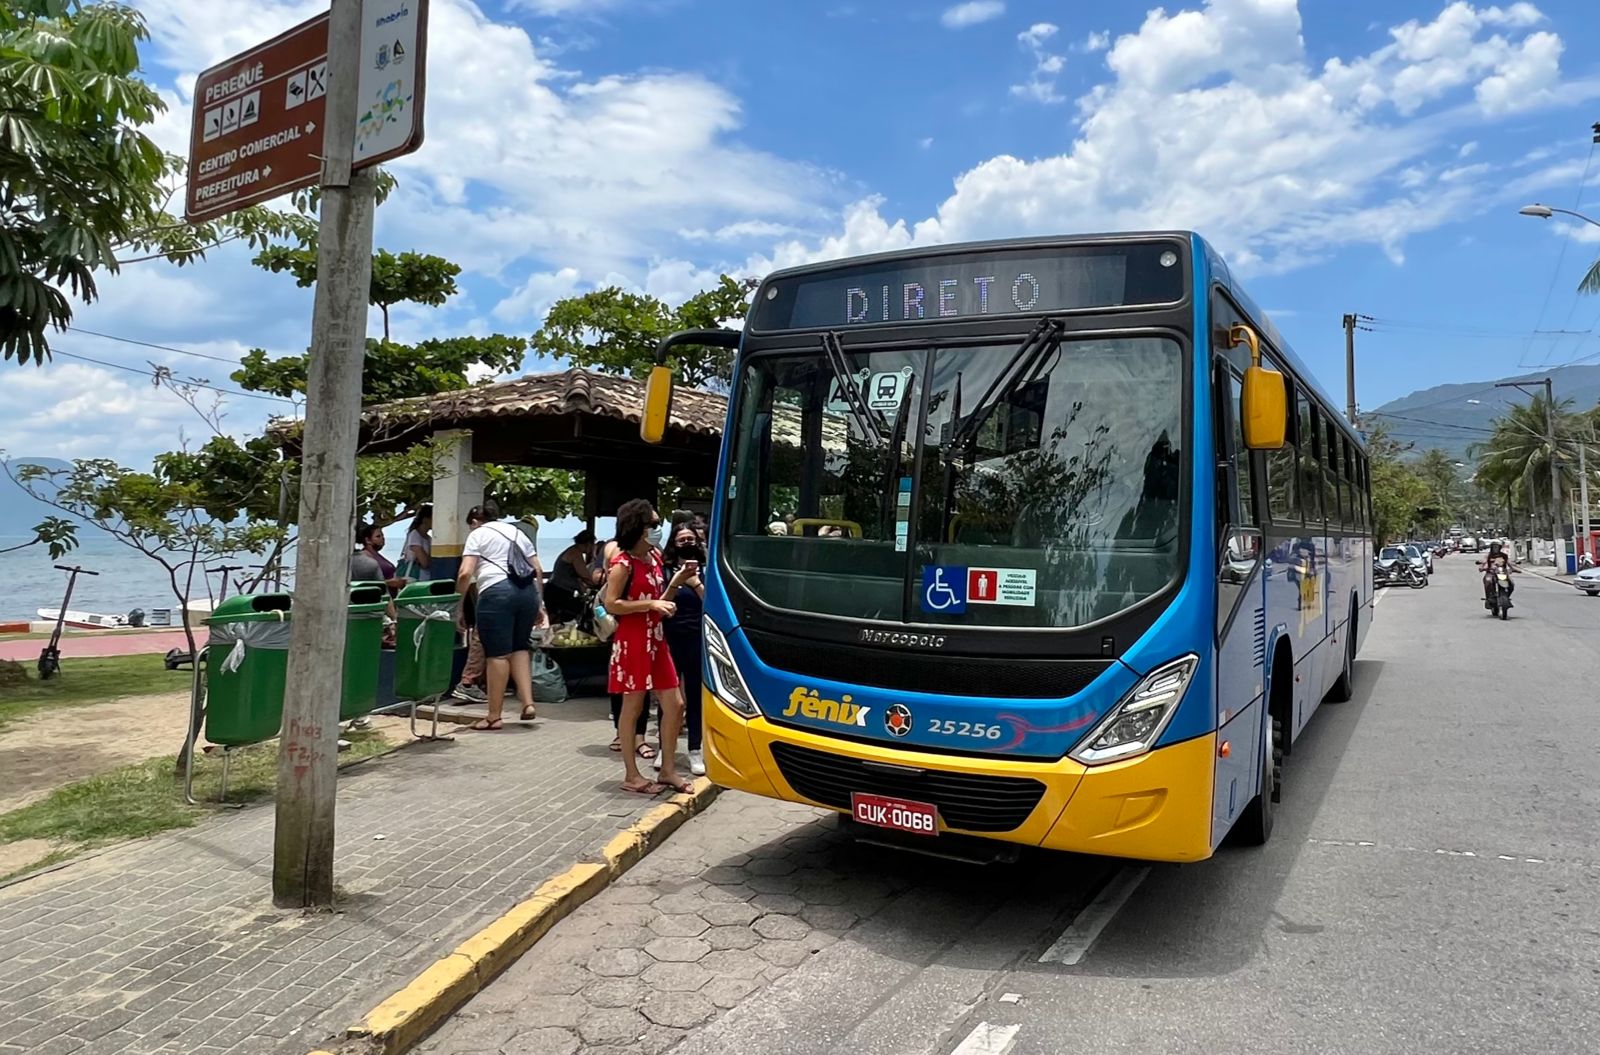 Programa Tarifa Legal no transporte público a R$ 1 é mantido aos domingos e feriados em Ilhabela